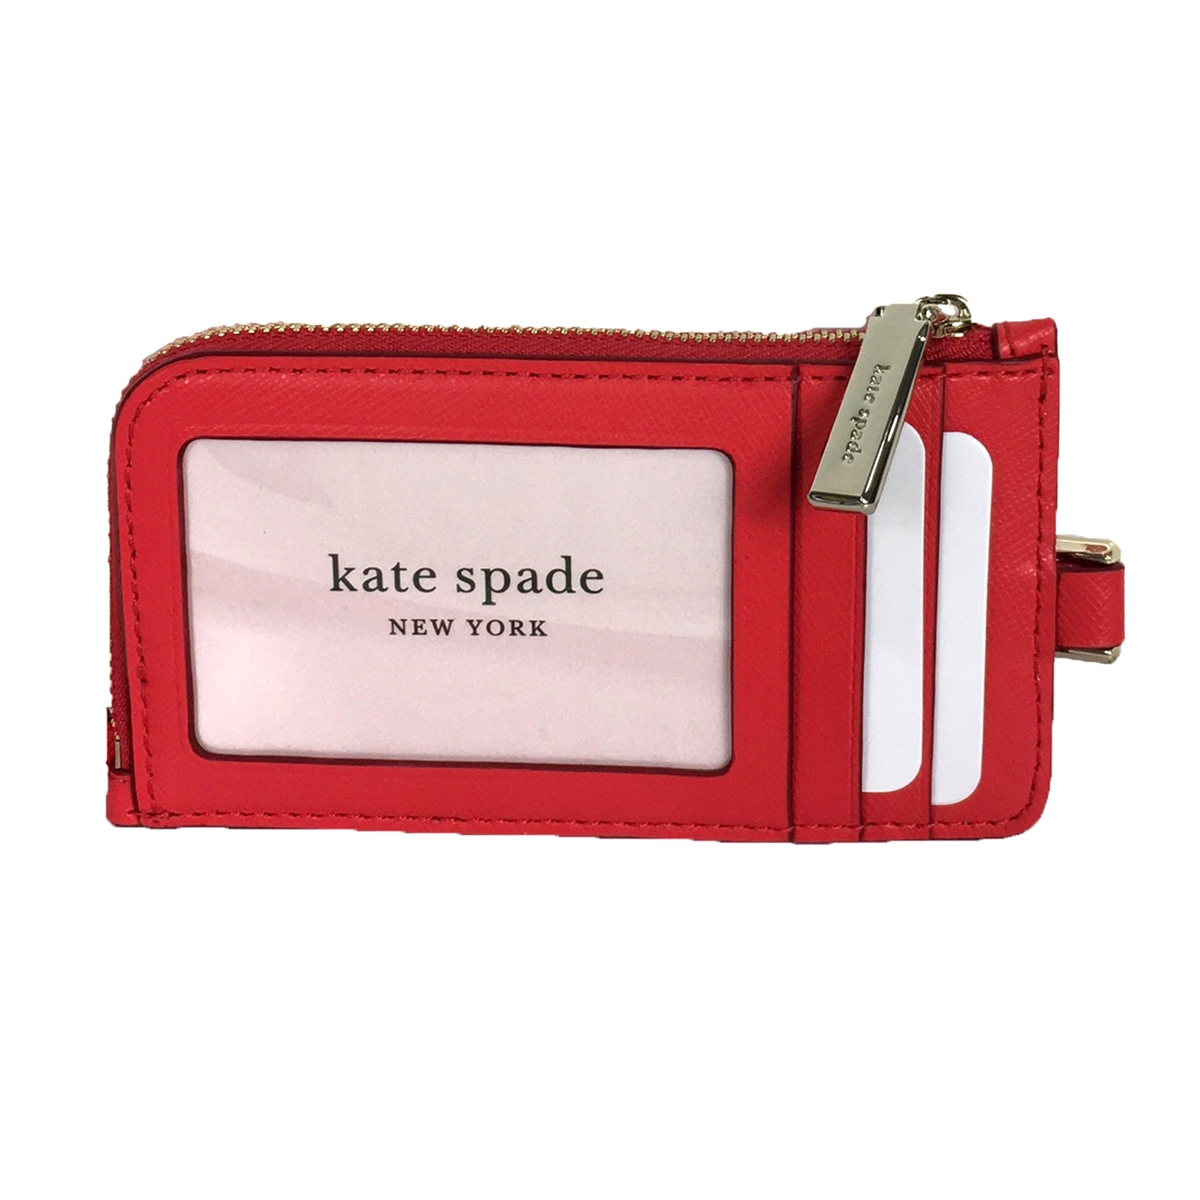 Kate Spade Staci Saffiano Card Case Lanyard ID Badge Holder